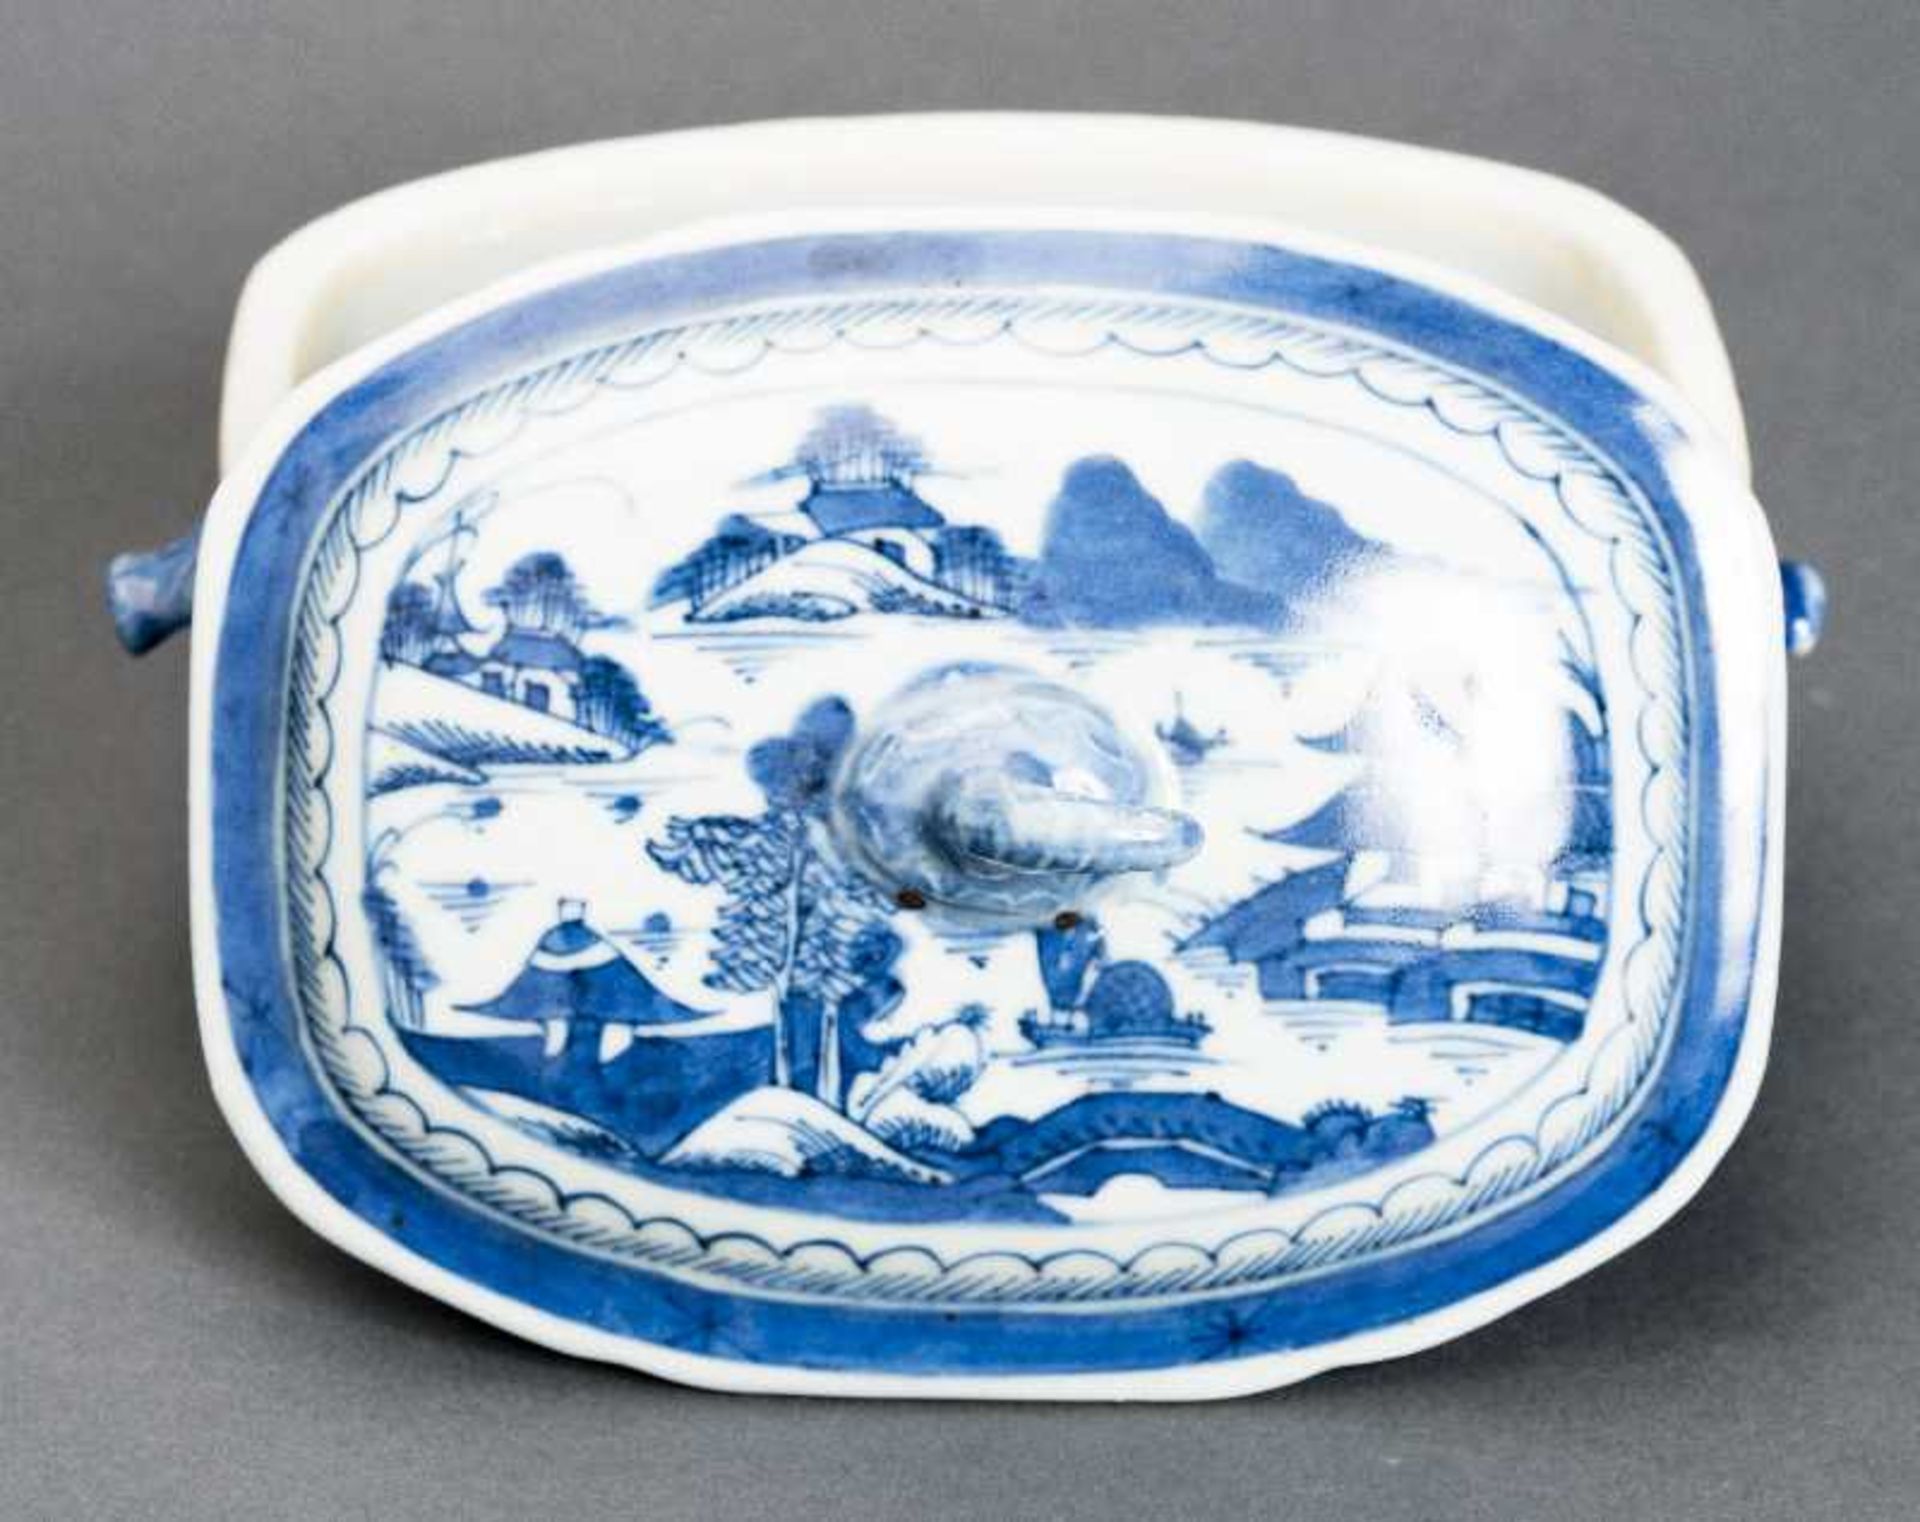 DECKELSCHALE Blauweiß-Porzellan. China, Qing-Dynastie, 19. Jh. Diese sehr ansprechende oval- - Bild 3 aus 6